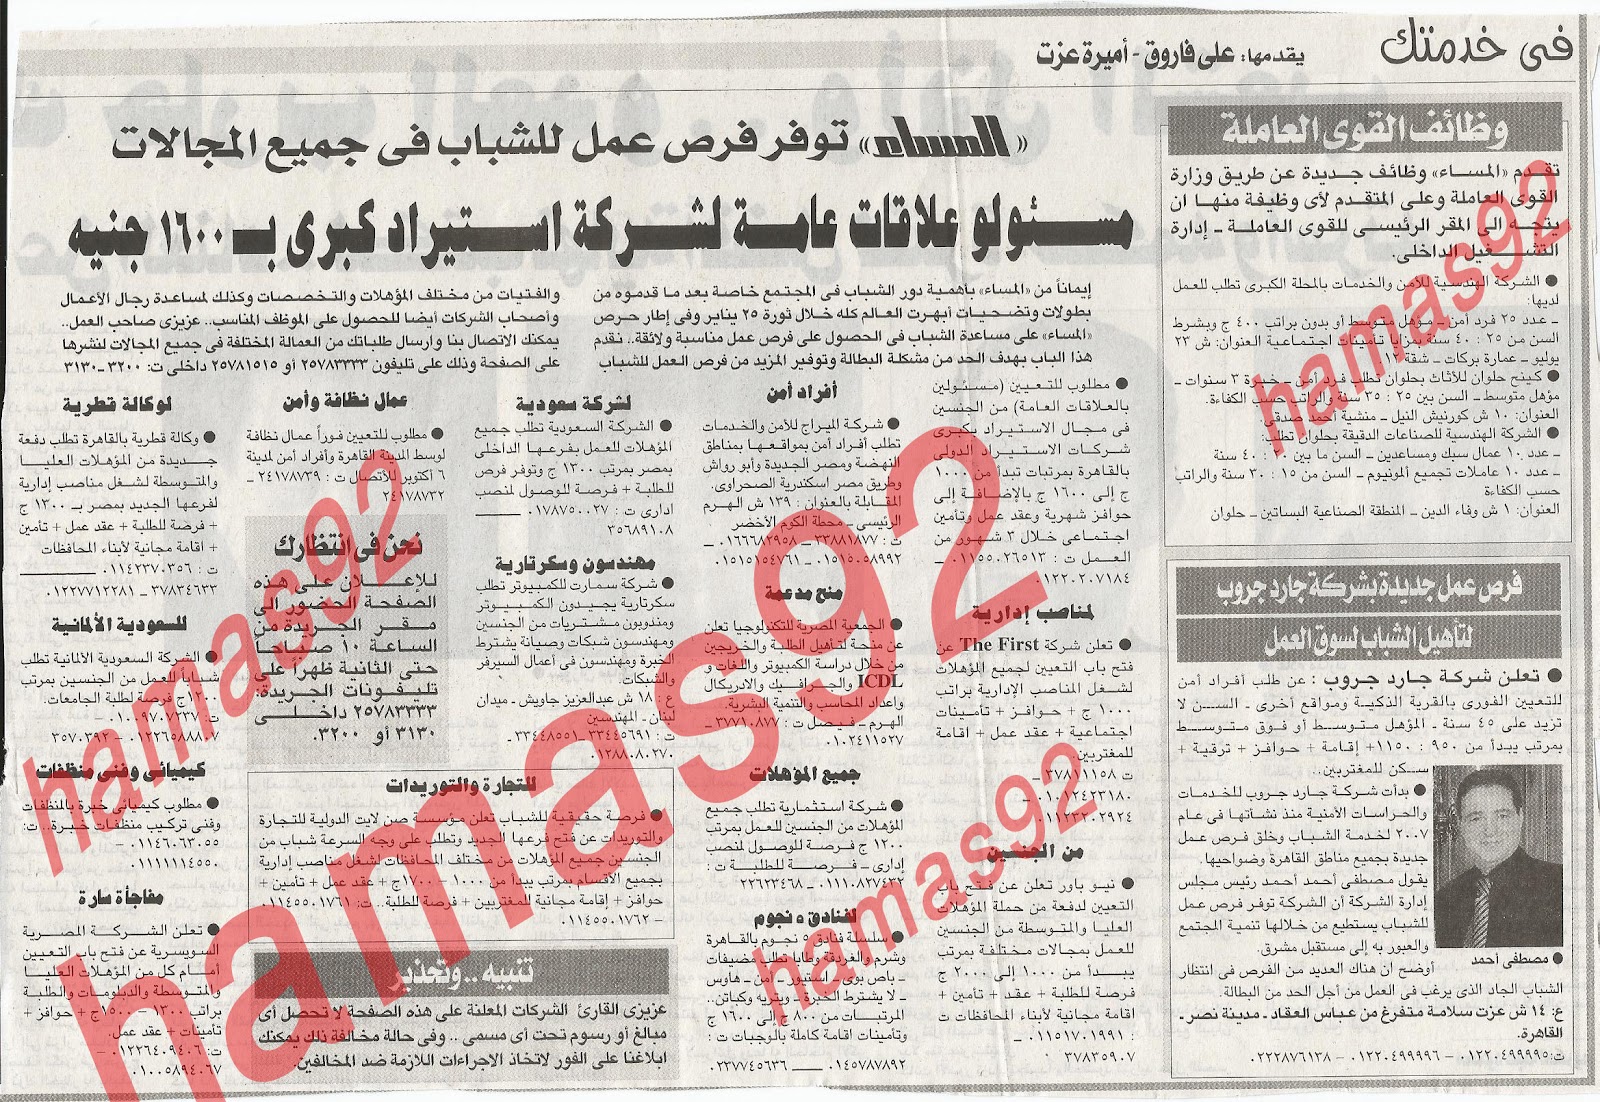 اعلانات وظائف جريدة المساء اليوم الجمعة 24/2/2012  %D8%A7%D9%84%D9%85%D8%B3%D8%A7%D8%A1+1